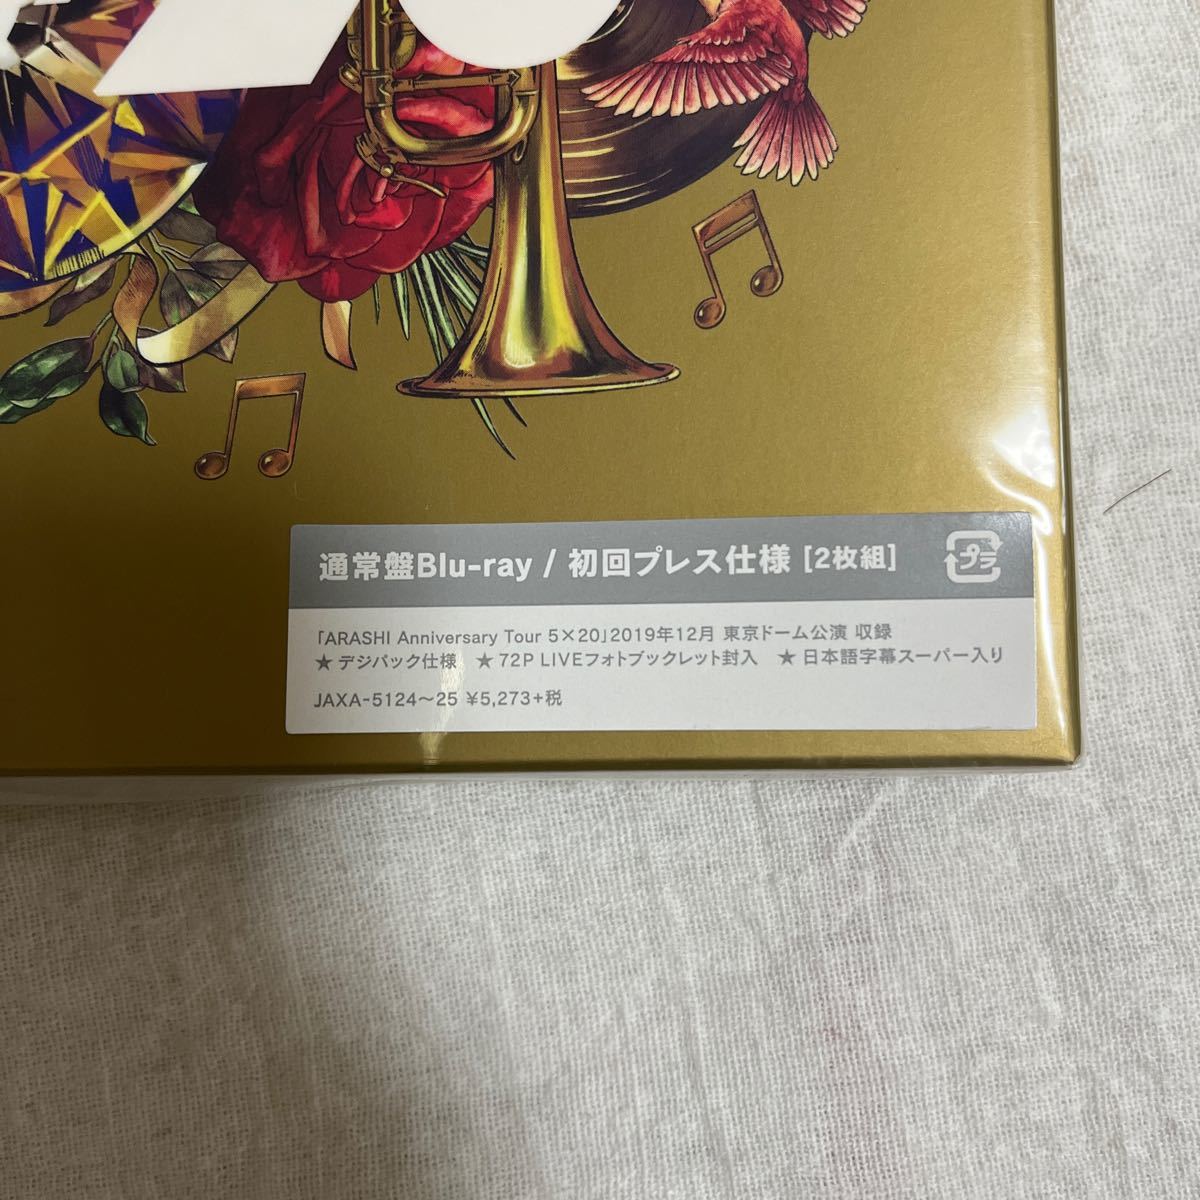 嵐/ARASHI Anniversary Tour 5×20(初回プレス仕様)〈2枚組〉」Blu-ray